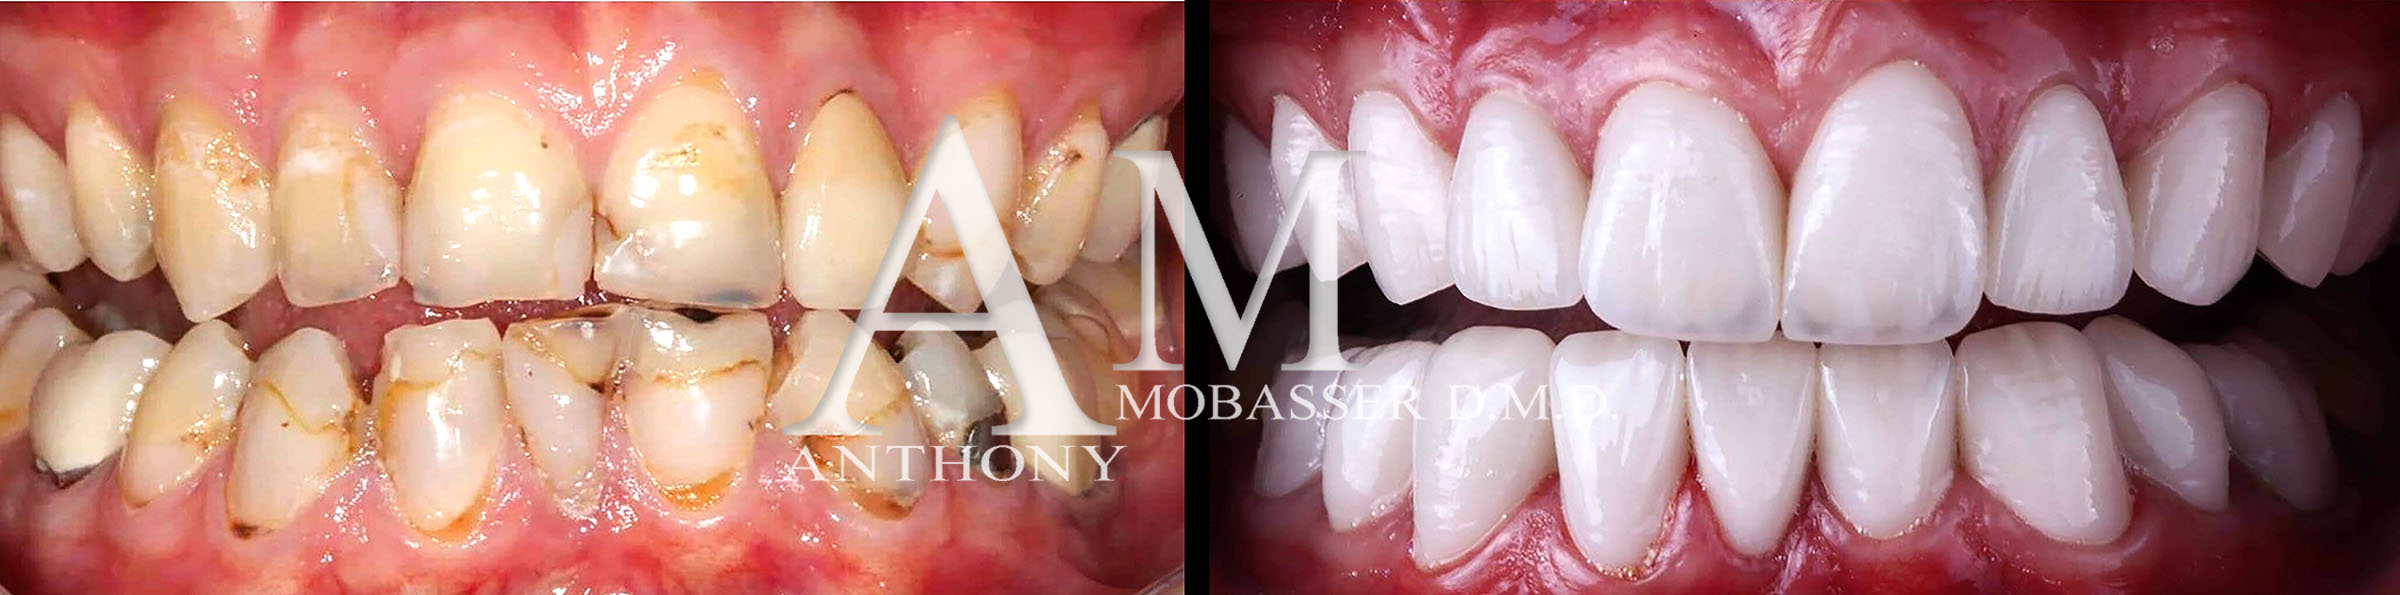 Il miglior dentista estetico del mondo | Dr. Anthony Mobasser